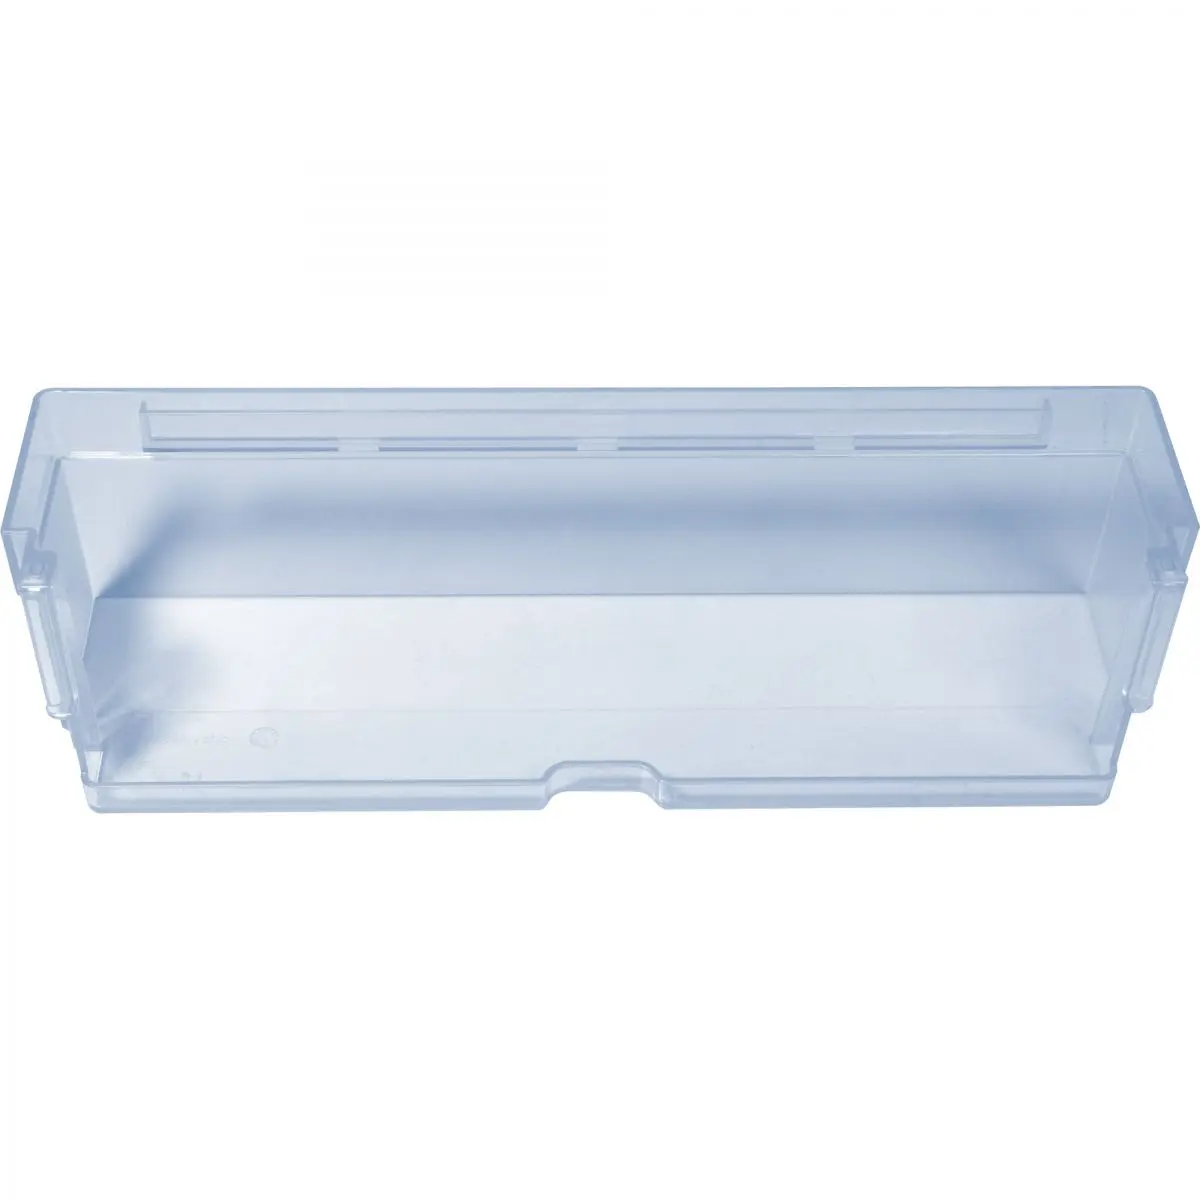 Polička transparentná modrá, š 30,5 x h 8,8 x v 7,5 cm pre chladničku Dometic RML 933X